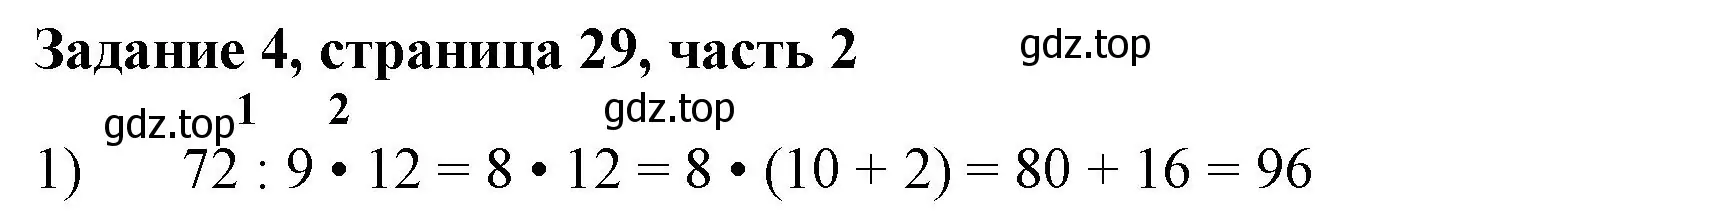 Решение номер 4 (страница 29) гдз по математике 3 класс Моро, Бантова, учебник 2 часть